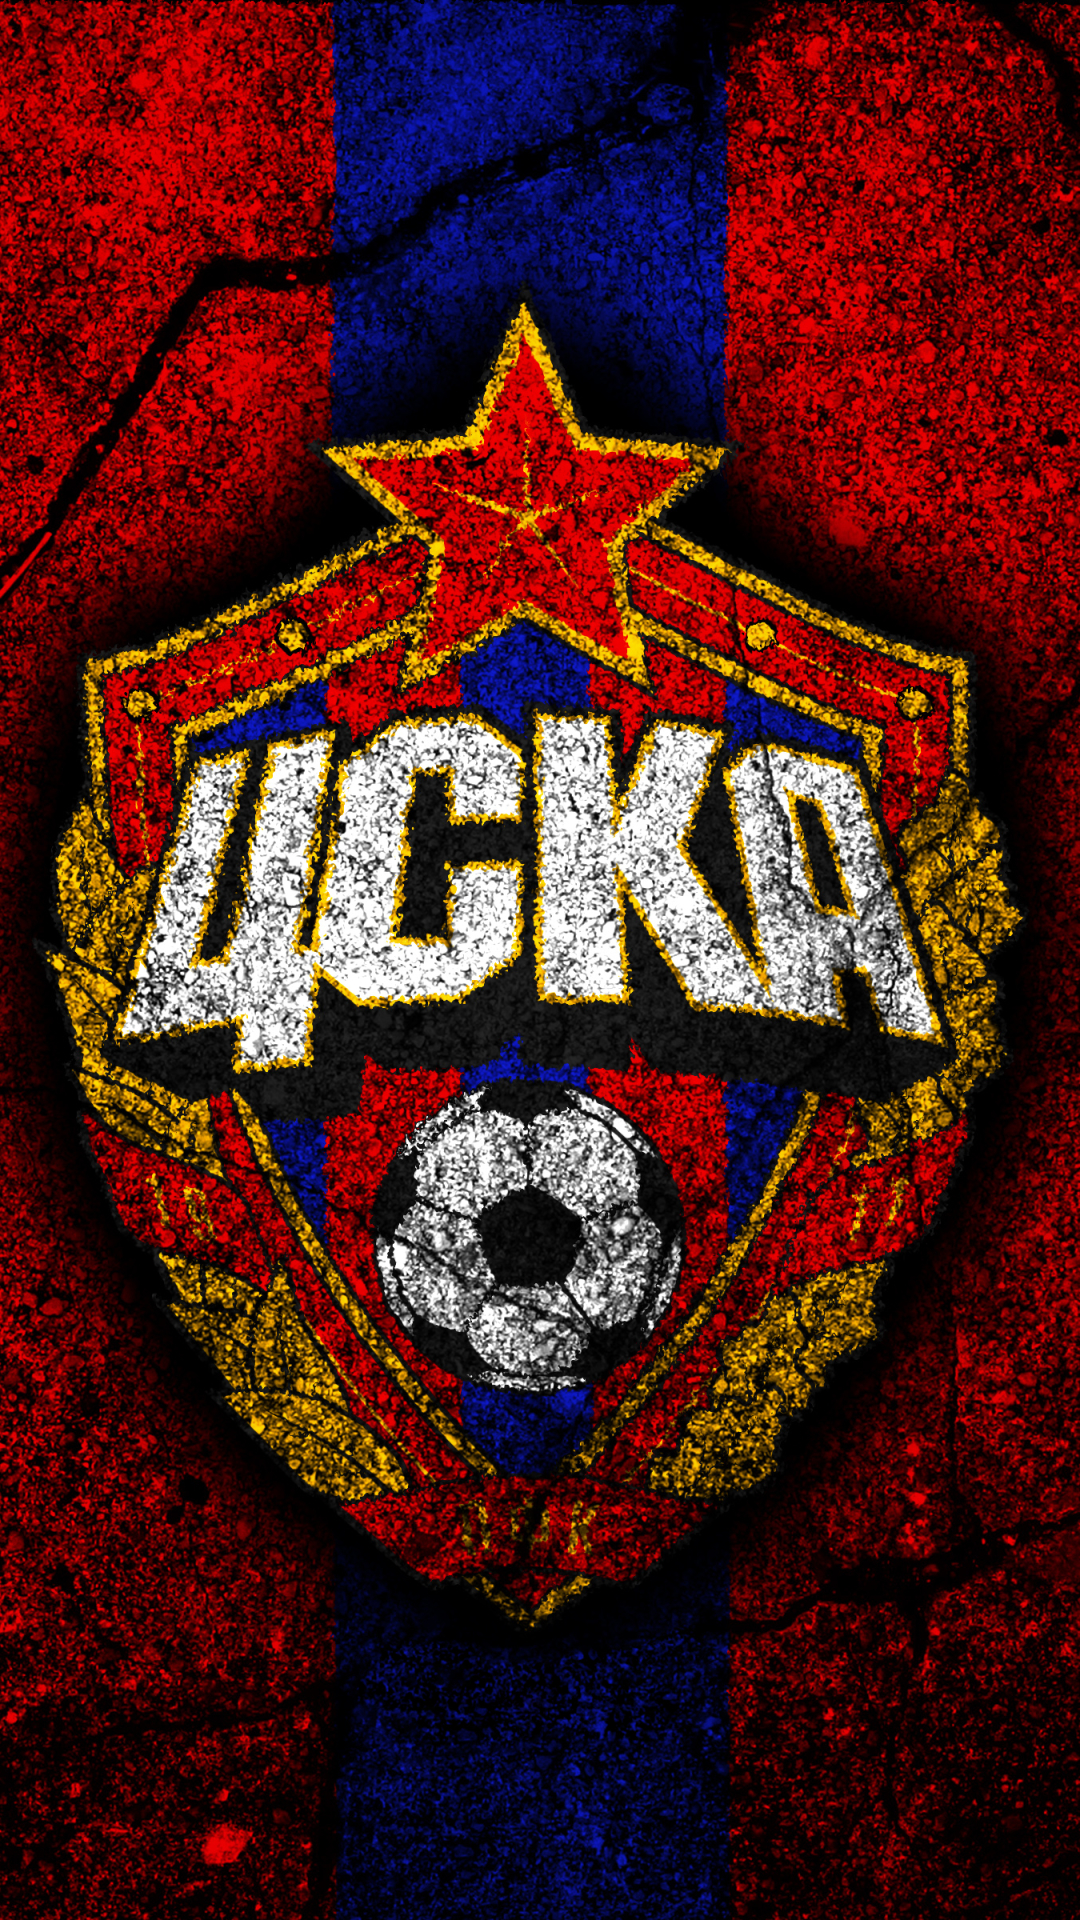 Descarga gratuita de fondo de pantalla para móvil de Fútbol, Logo, Emblema, Deporte, Pfc Cska Moscú.